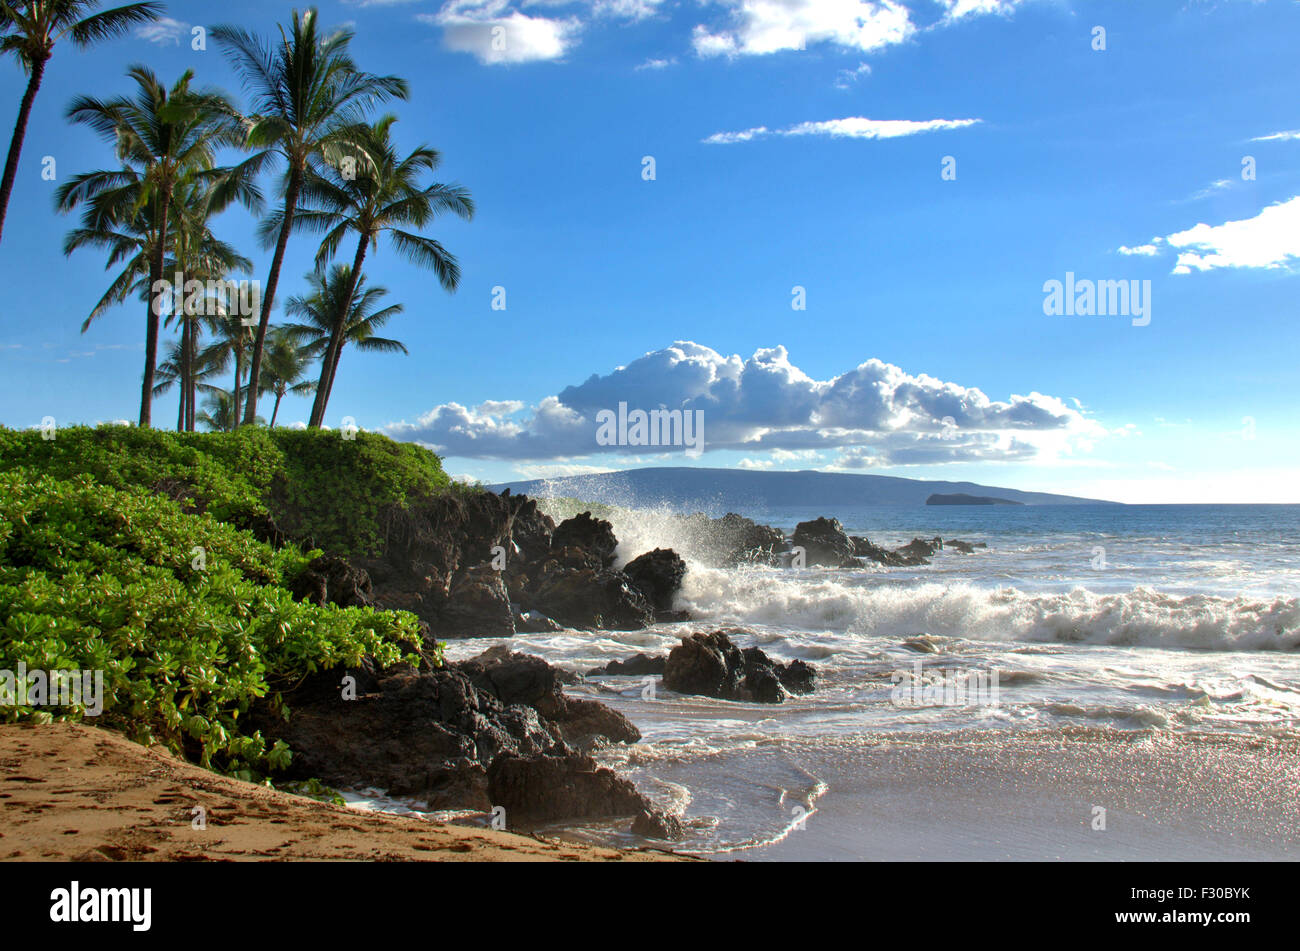 Tropischen hawaiianischen Strand mit Palmen, Maui, Hawaii. Malerische Reiseziel Lage. Schönen natürlichen Strand Meer. Spaß und Sonne. Stockfoto